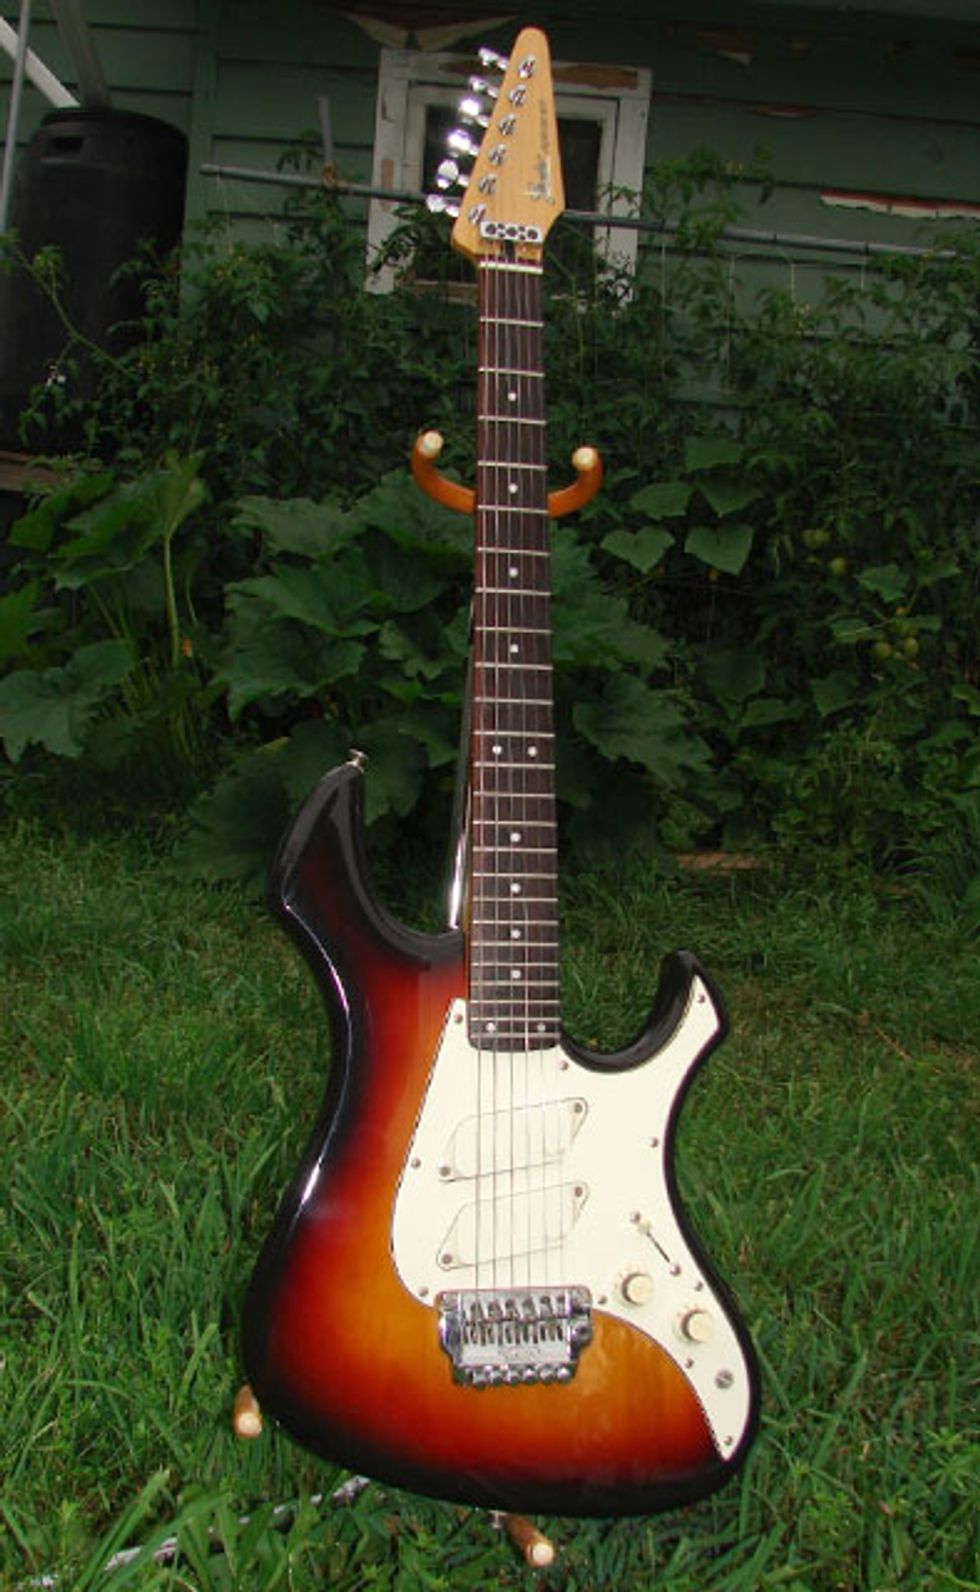 October: 1985 Fender Performer